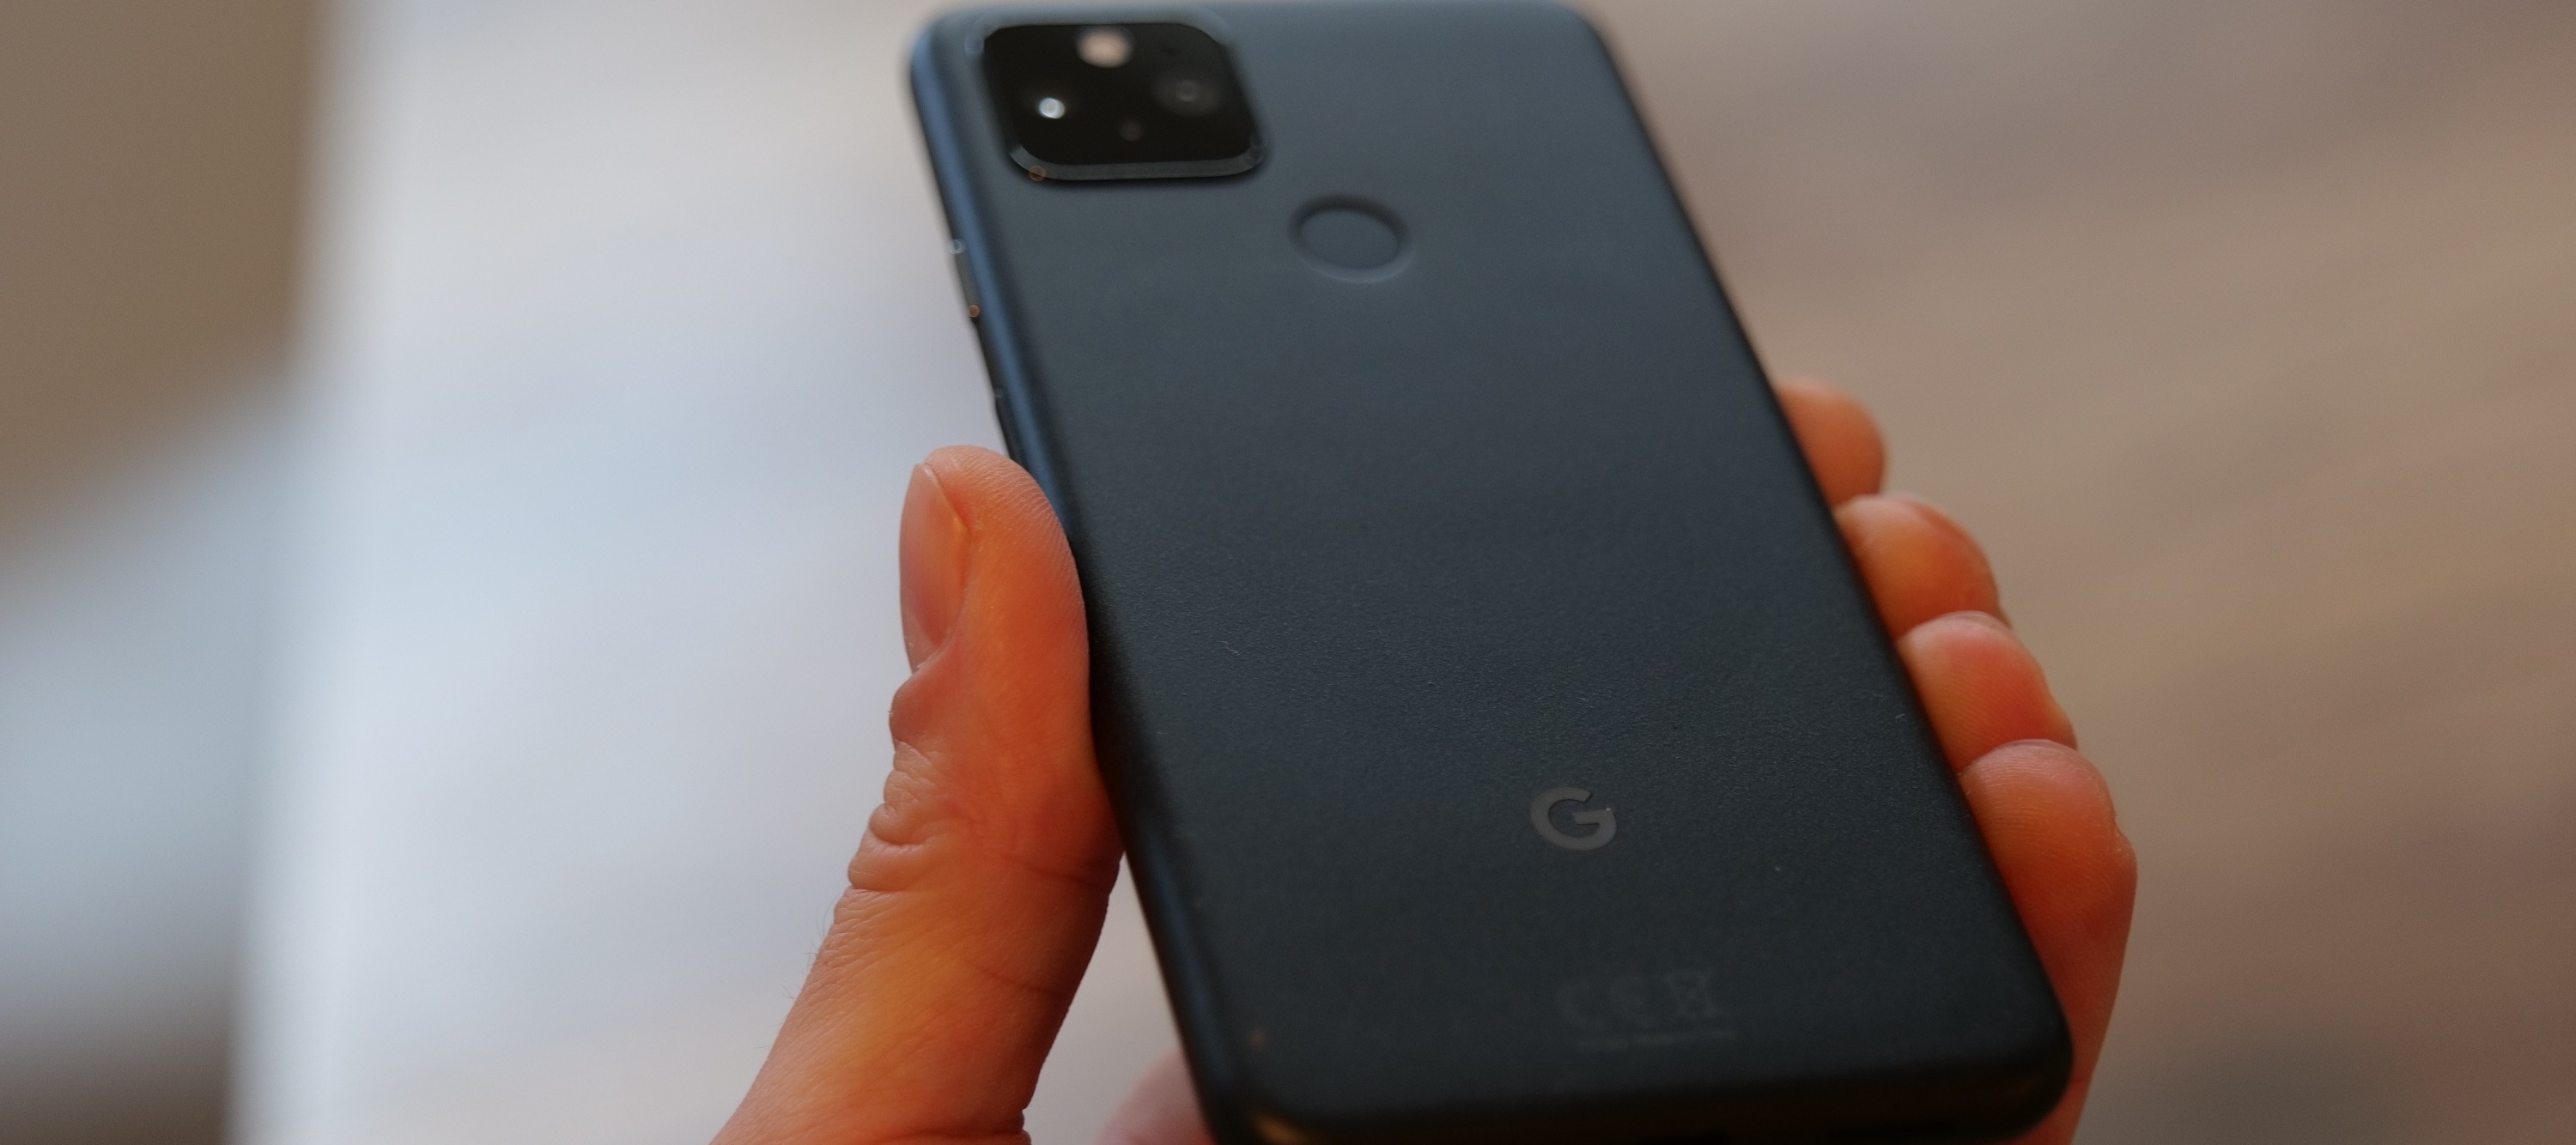 Google Pixel 5 - Ein schickes und kompaktes Smartphone mit einem besonderen Display und einer tollen Kamera